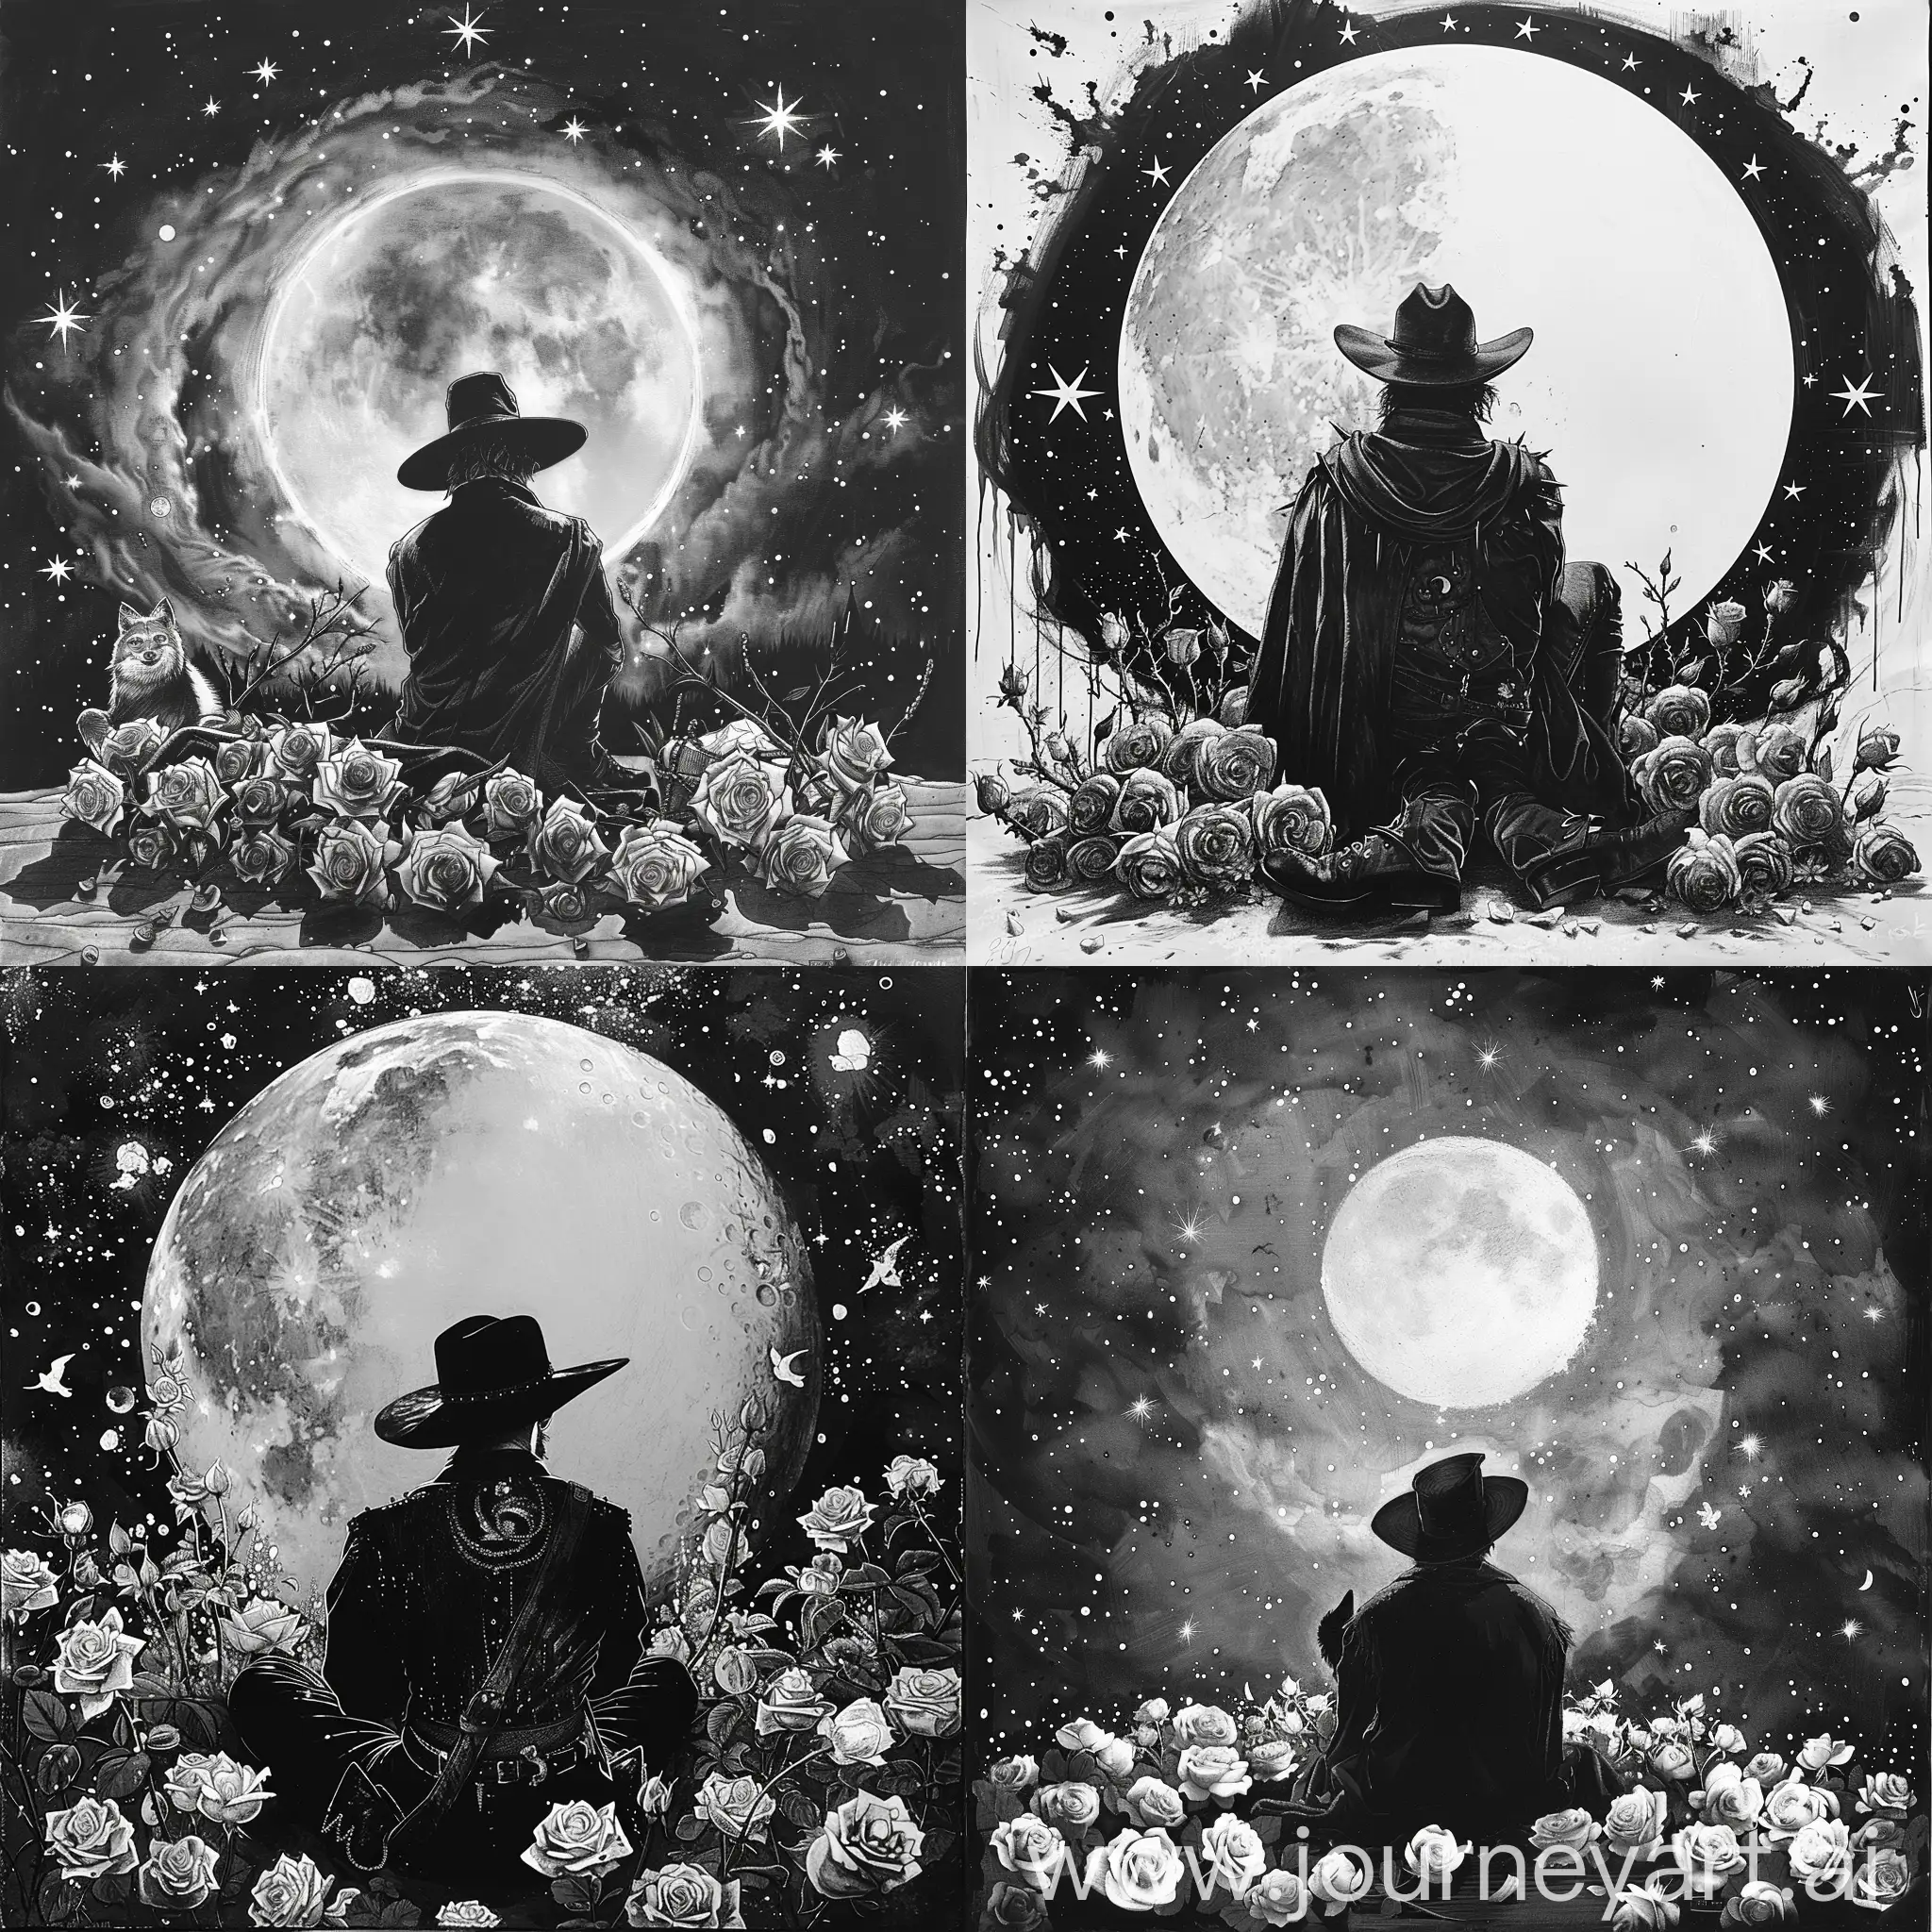 Zorro sentado viendo hacia arriba, viendo hacia un saturno rodeado por 9 estrellas y el zorro rodeado entre rosales con espinas en blanco y negro